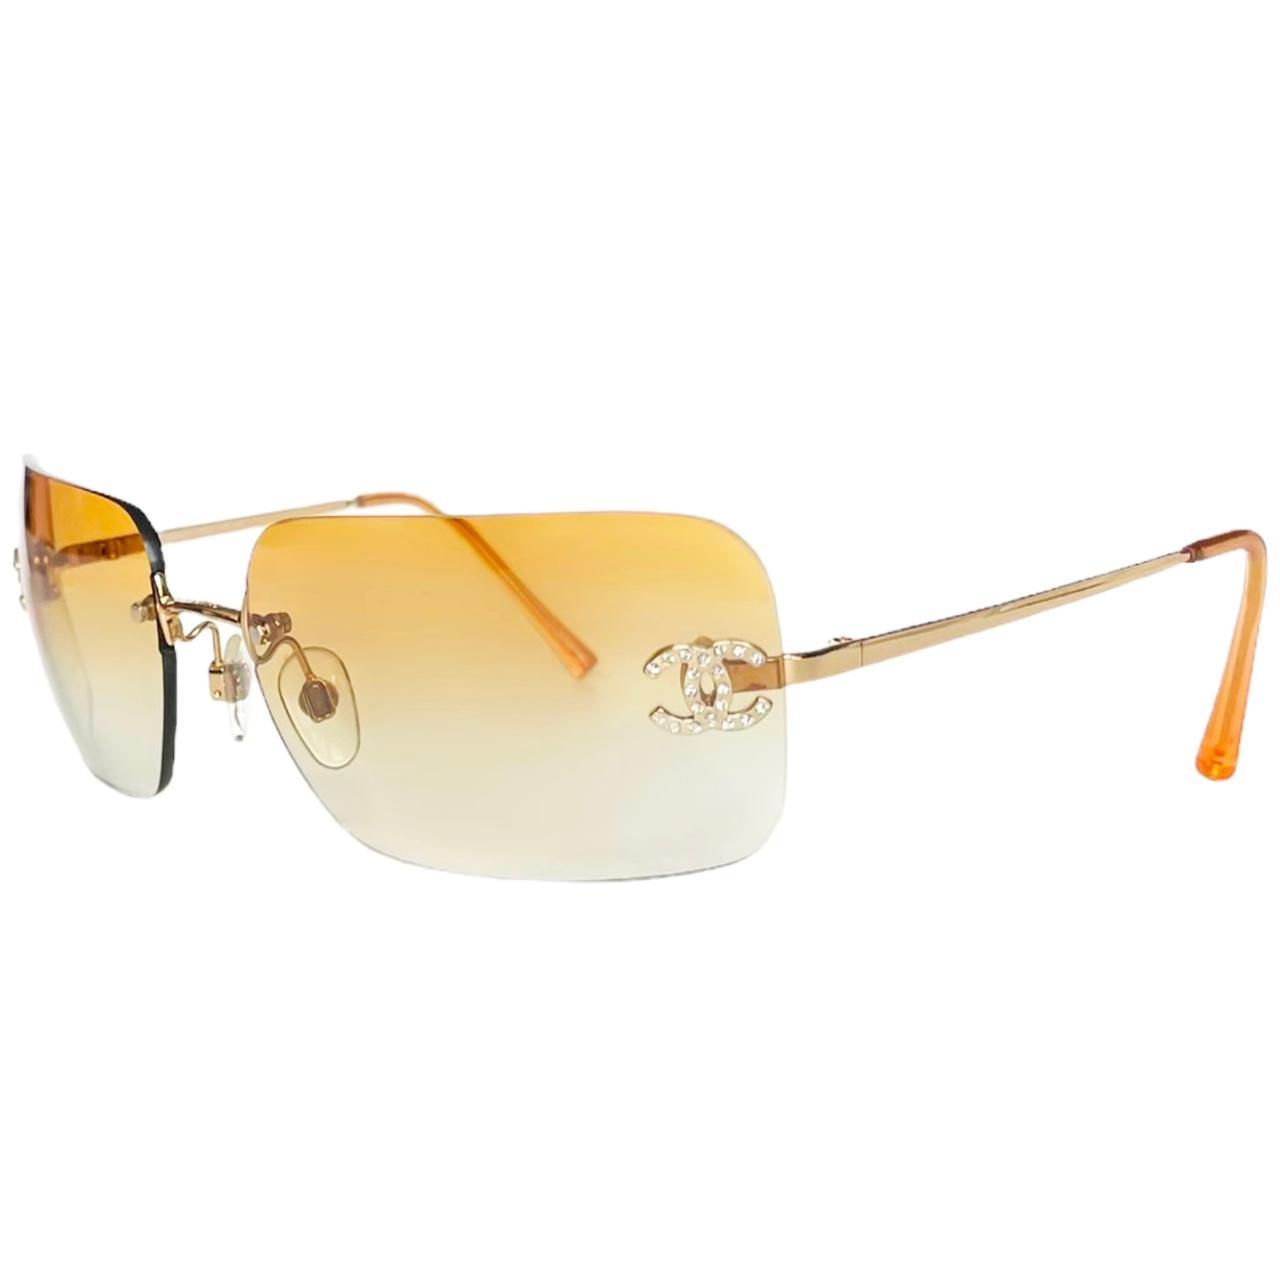 RARE Authentic Diamanté Chanel Sunglasses Light - Depop